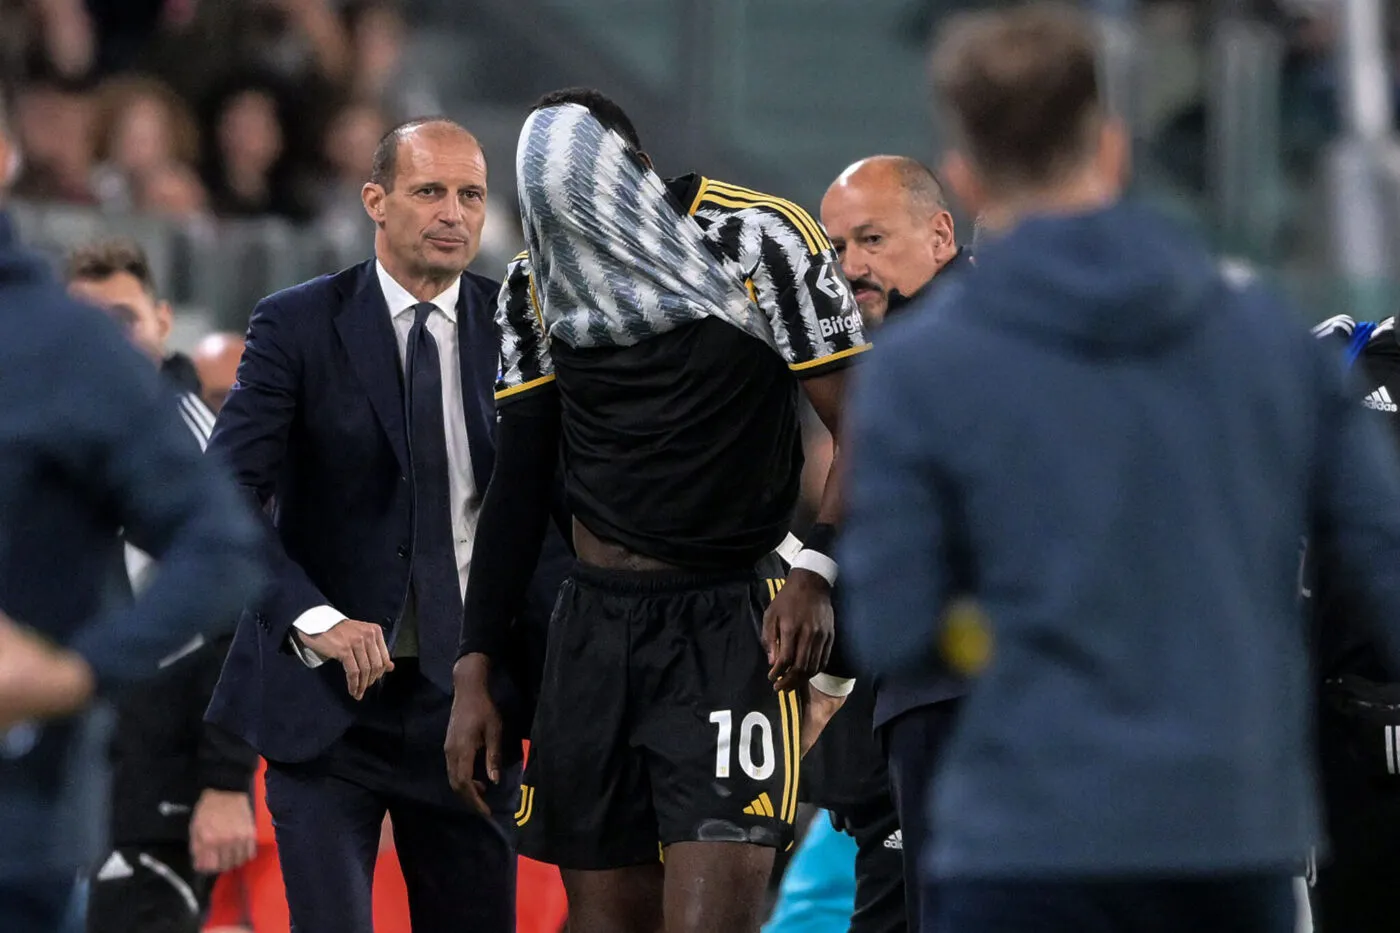 Un nouveau retrait de points en Série A pour la Juventus ! - Italie -  Juventus - 23 Mai 2023 - SO FOOT.com